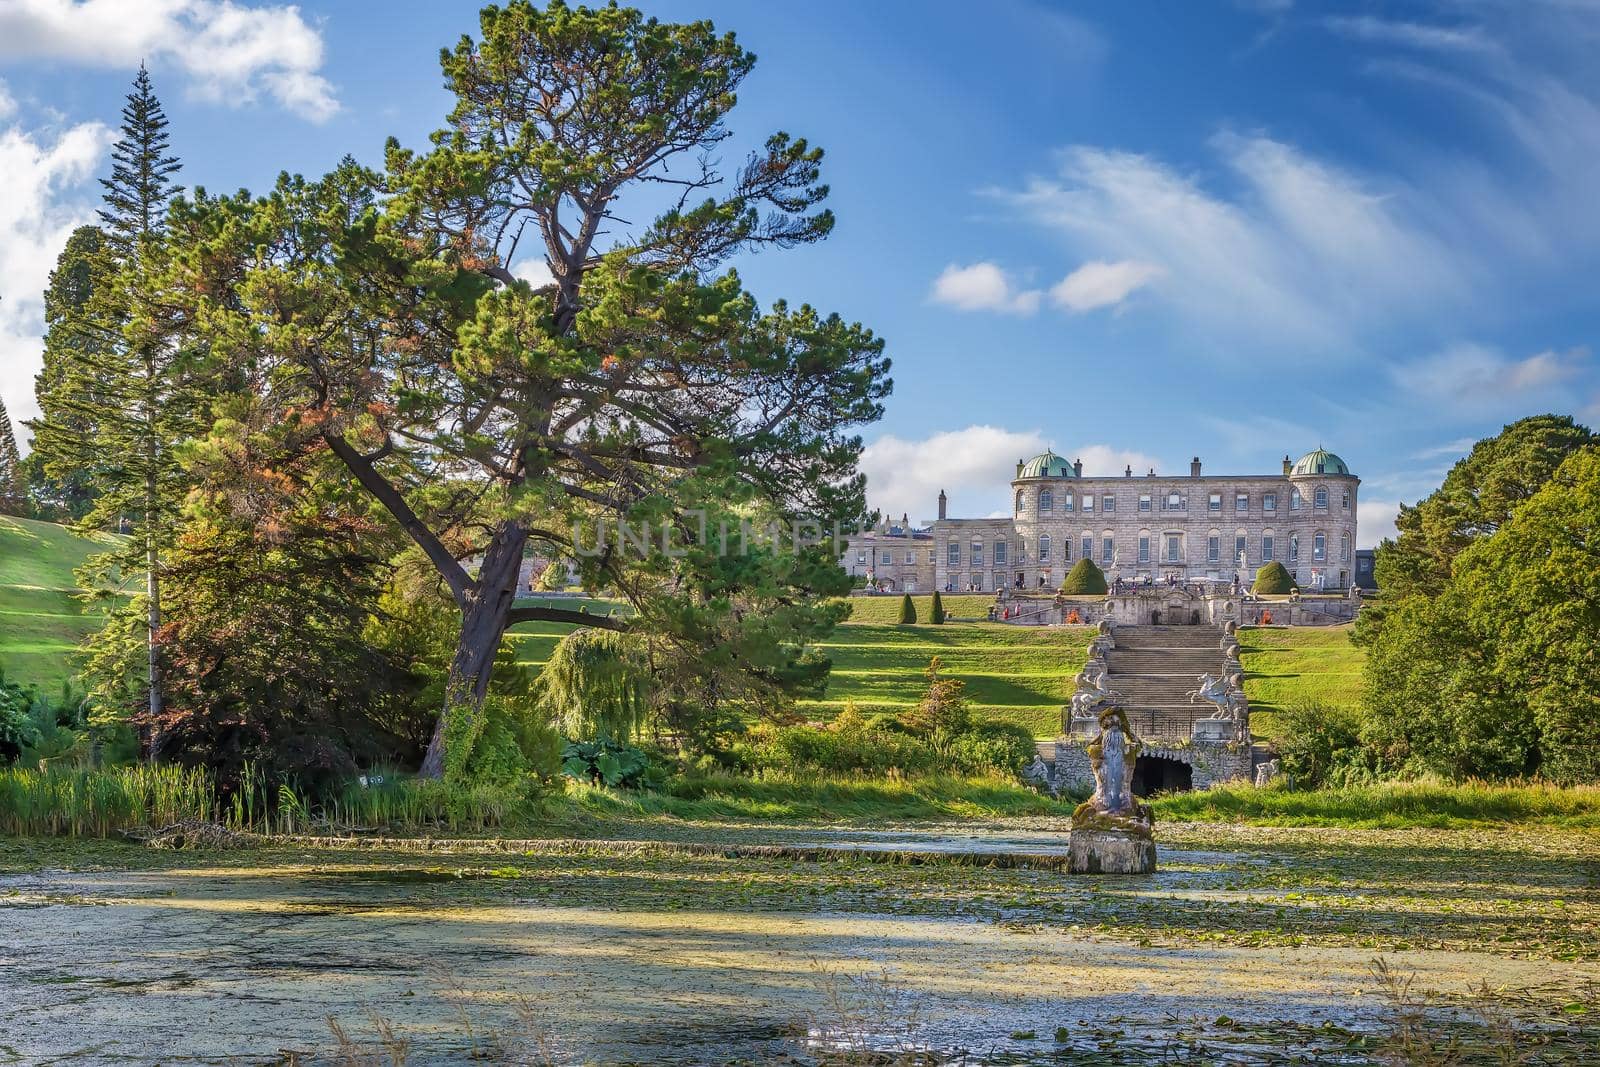 View of Powerscourt Estate from garden, Ireland